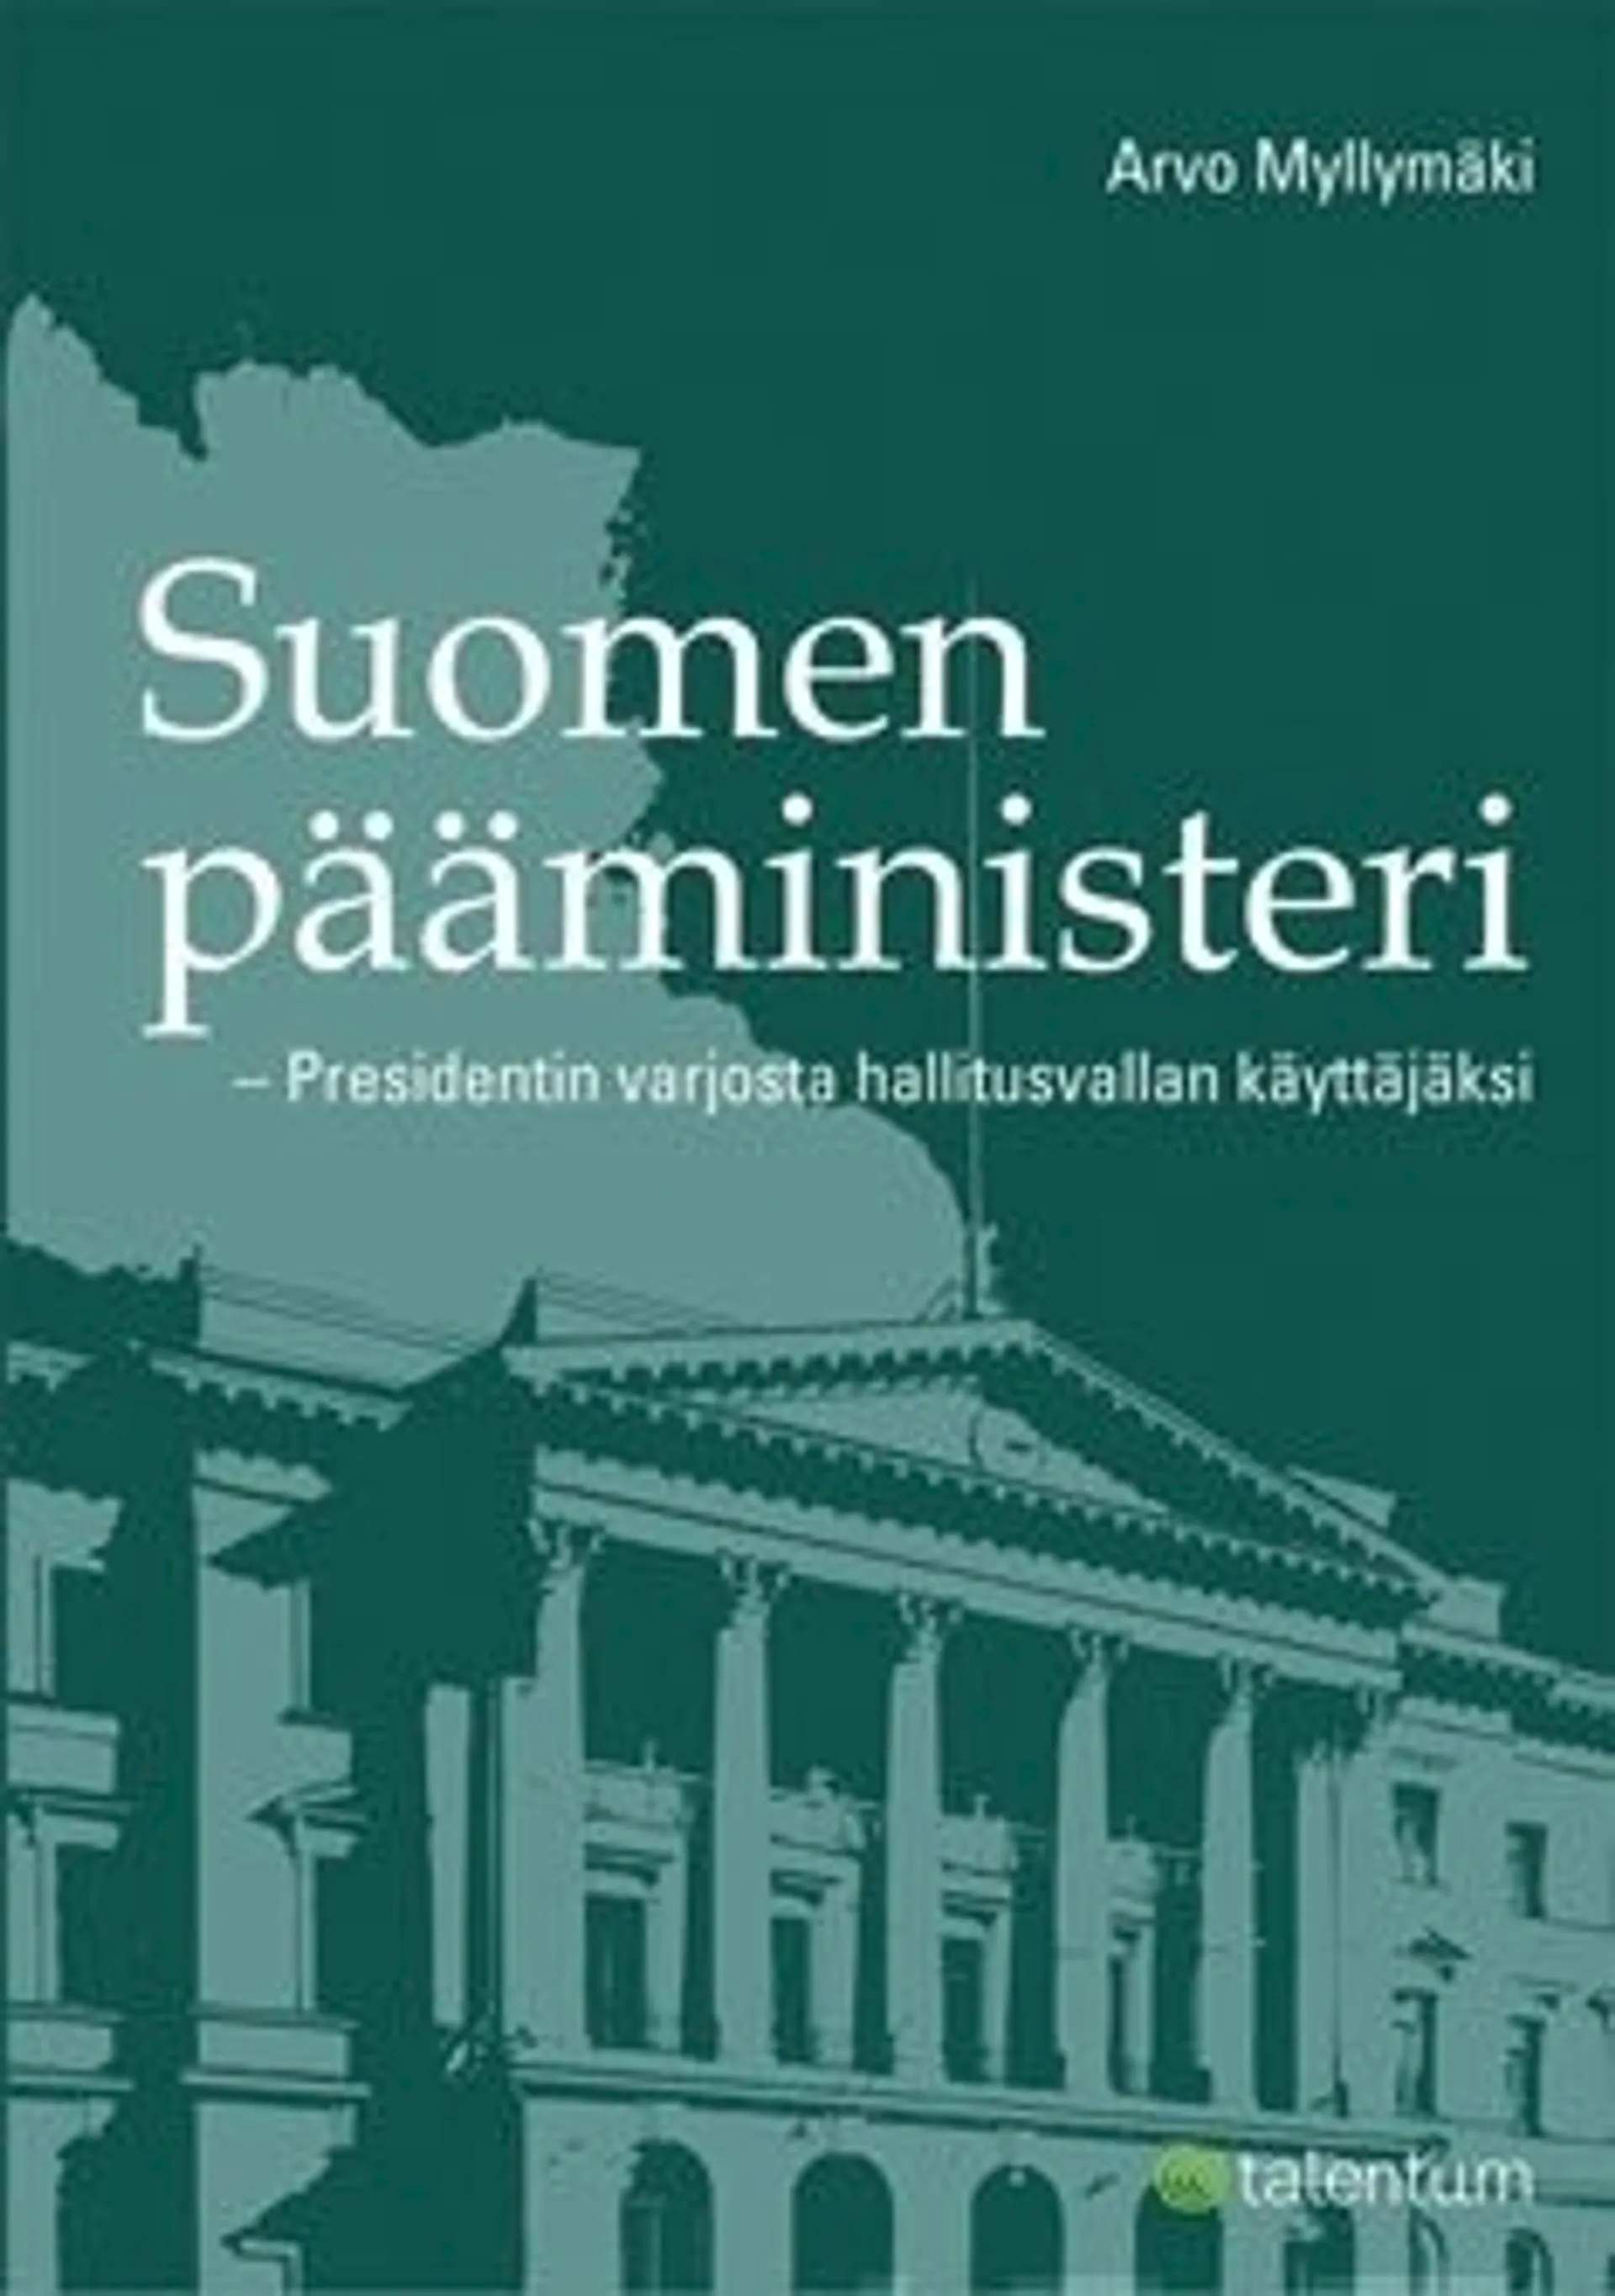 Suomen pääministeri